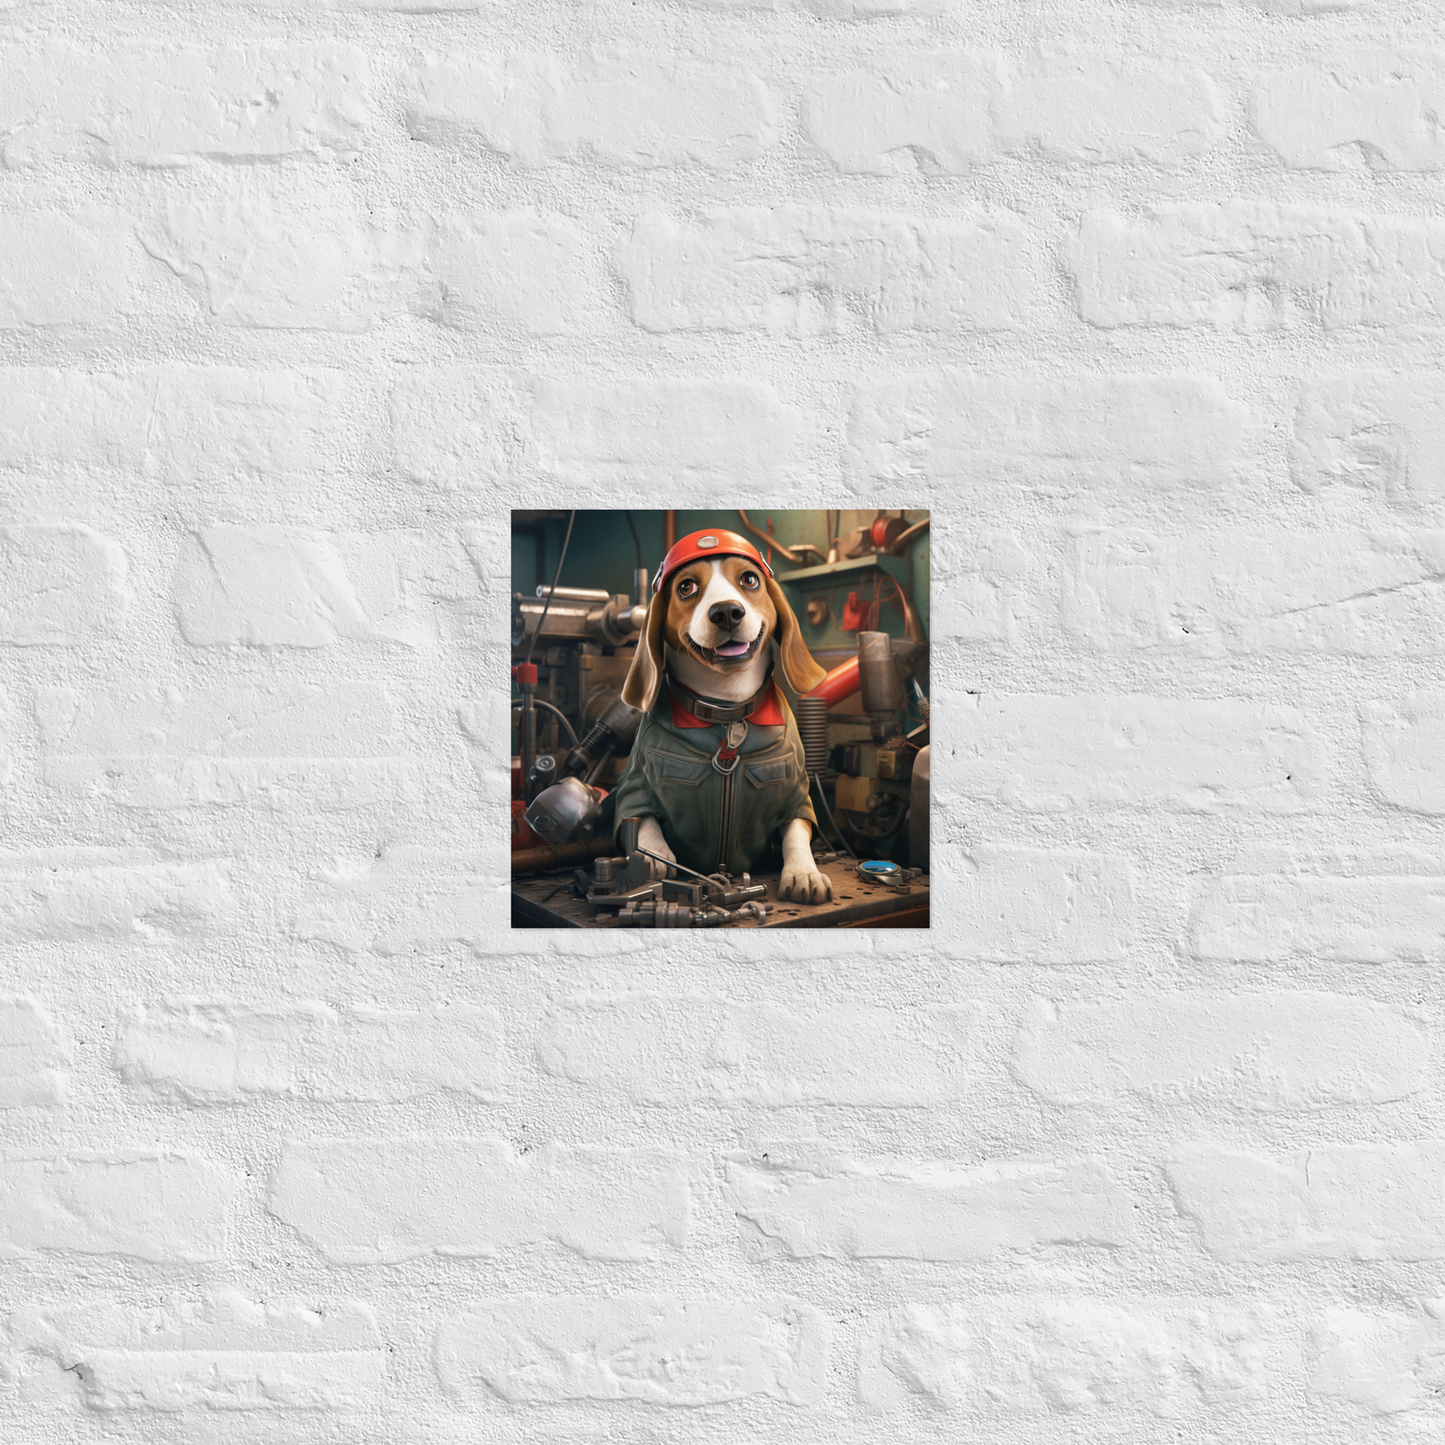 Beagle AutoMechanic Poster